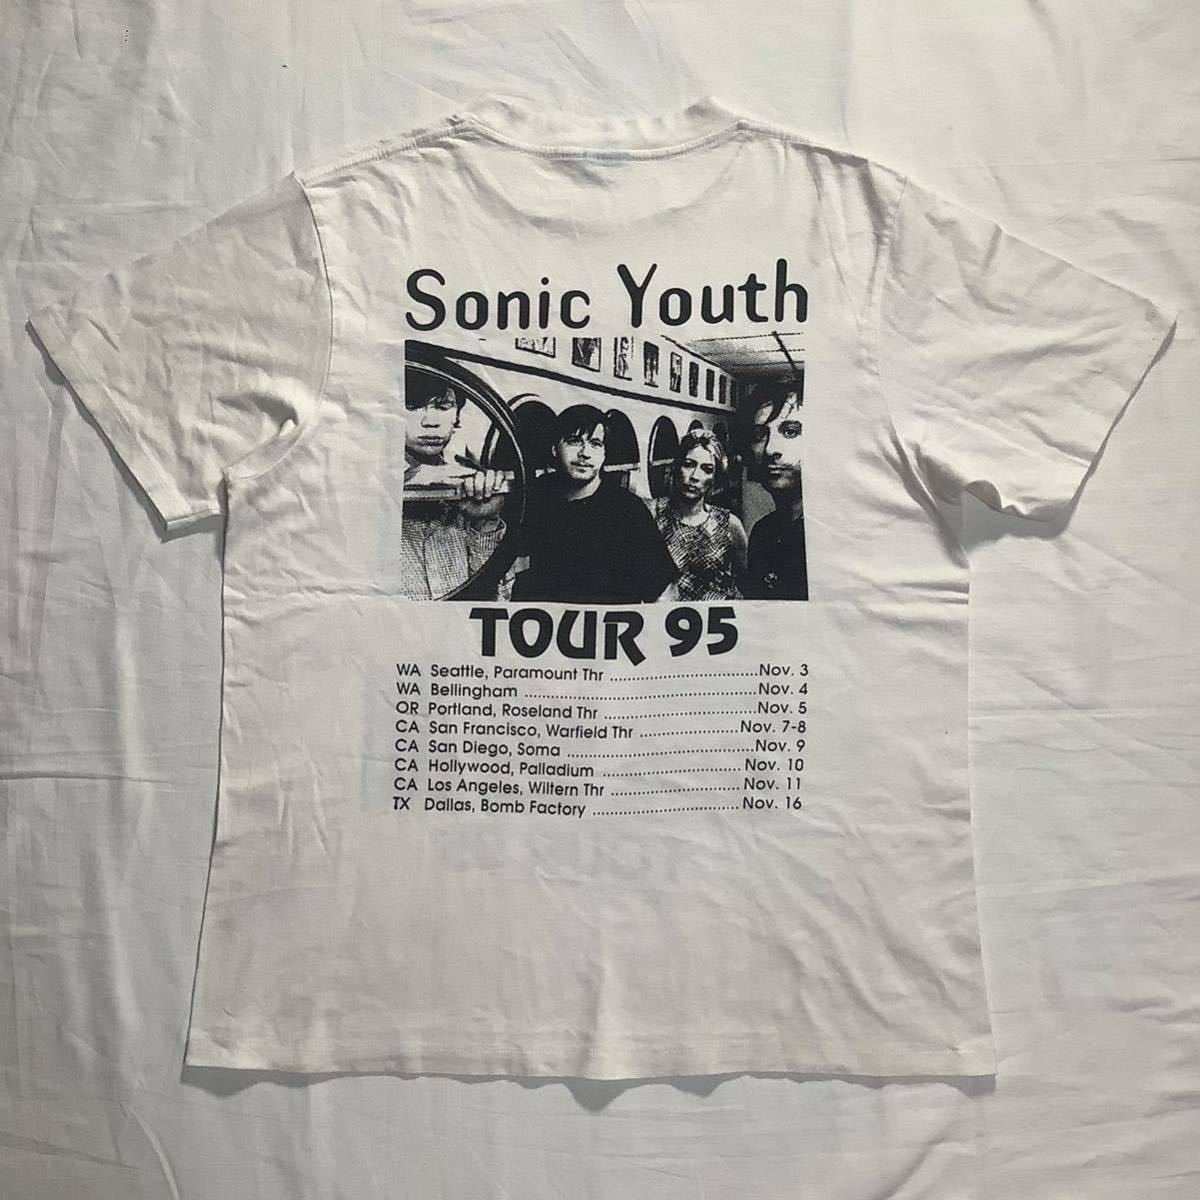 激レア! 1995 Sonic Youth Tour パーキングロット 両面プリント メンバーフォト ヴィンテージ Tシャツ 80s 90s _画像4